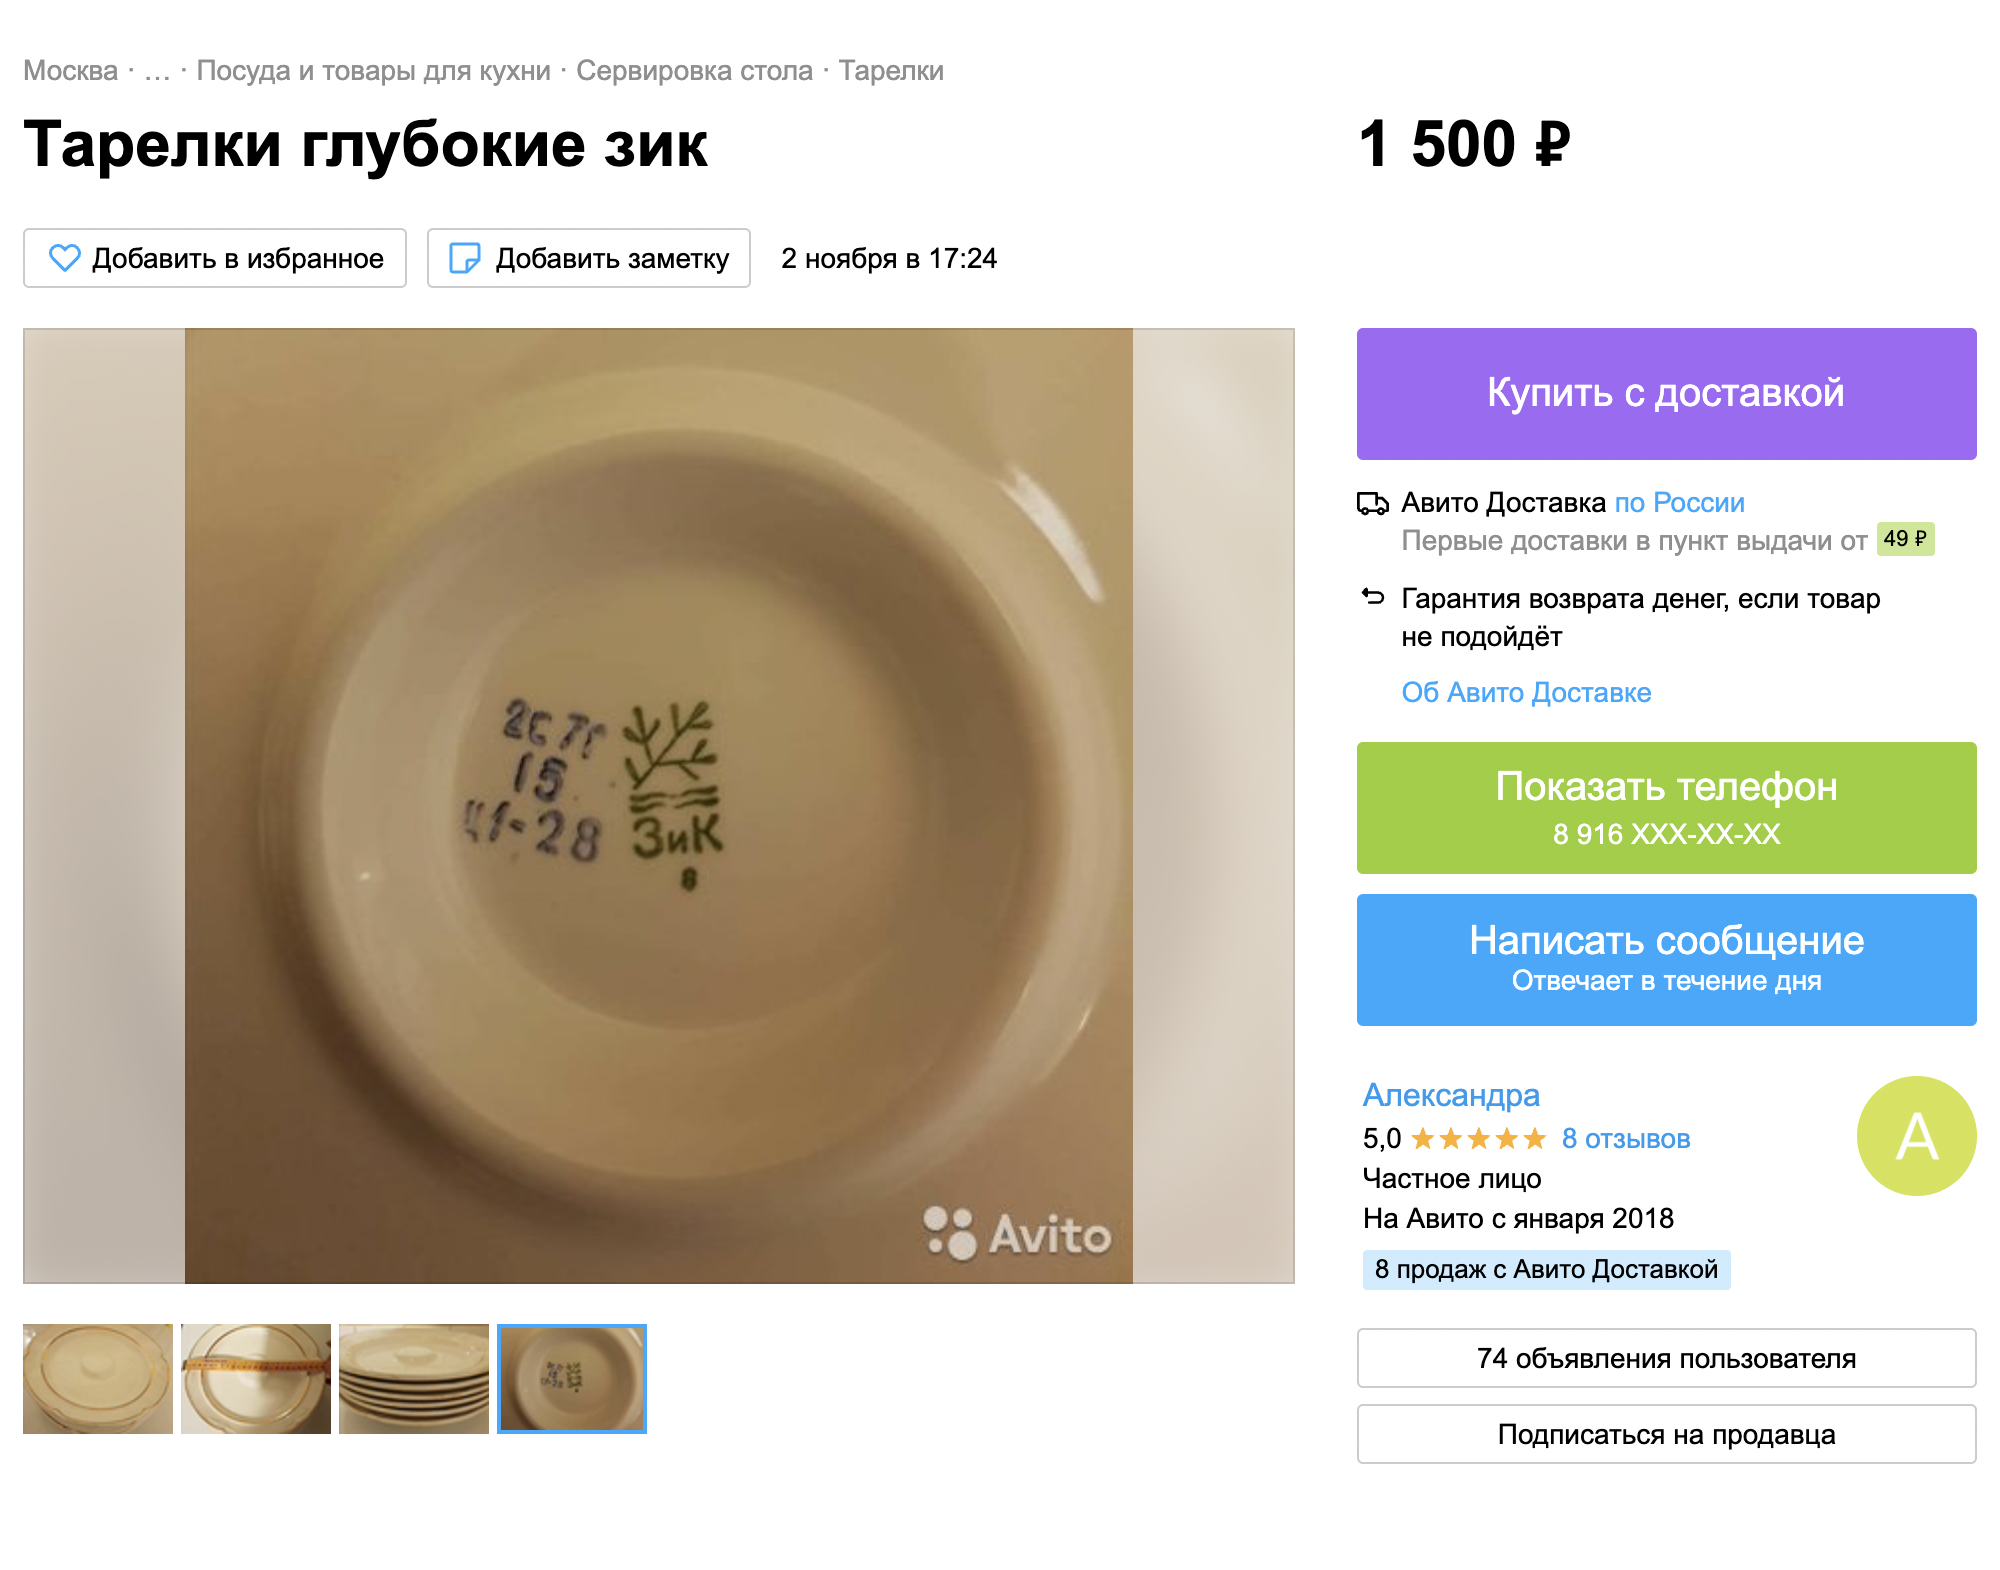 Похожая тарелка с клеймом. Источник: avito.ru